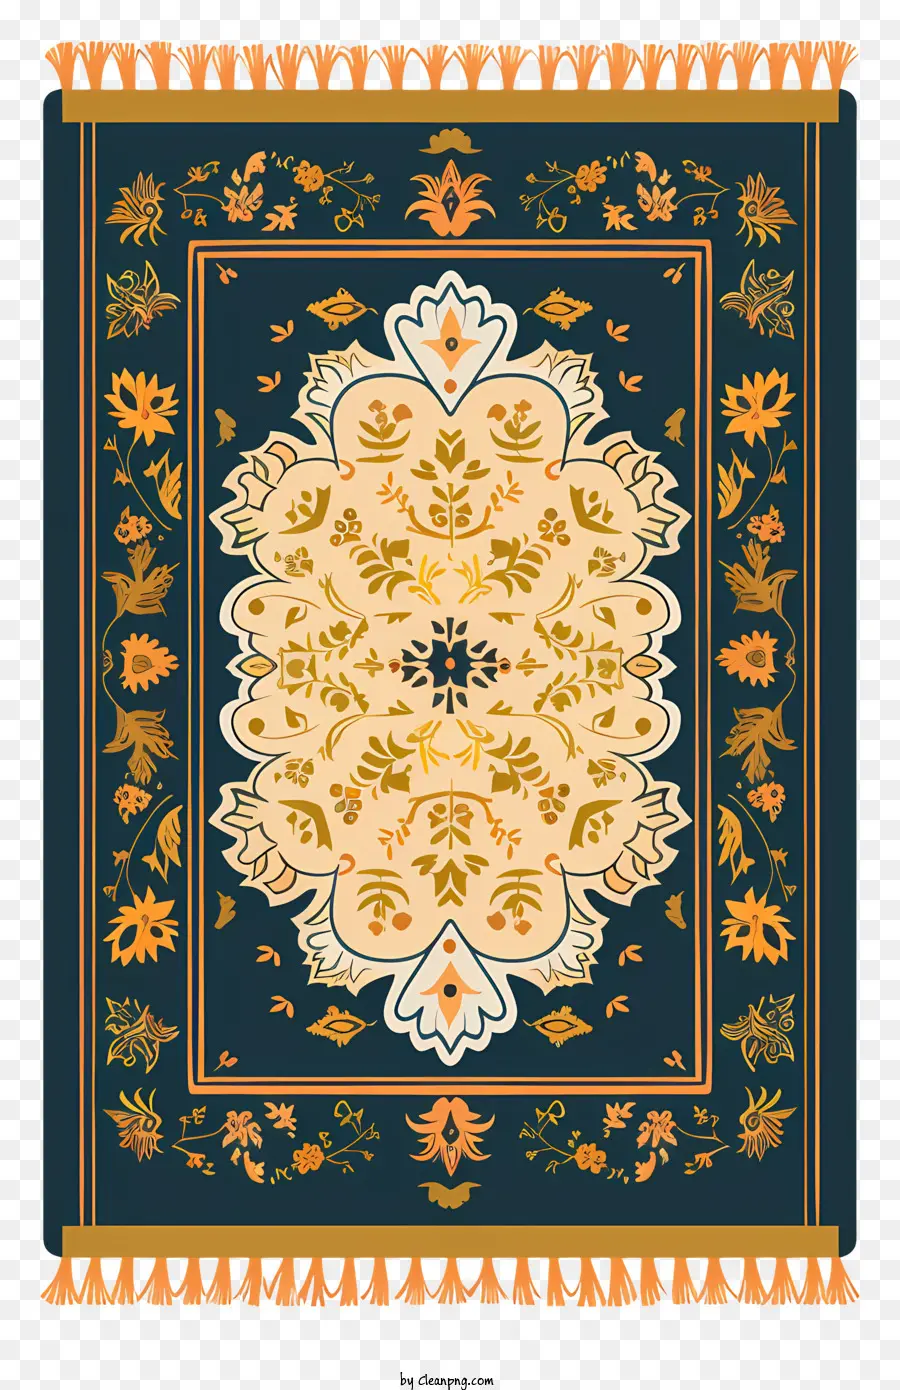 Gebetsteppich dekorativer Teppich goldenes Medaillon Blumenmuster Blauer Hintergrund - Dekorativer blauer Teppich mit goldenem Medaillon